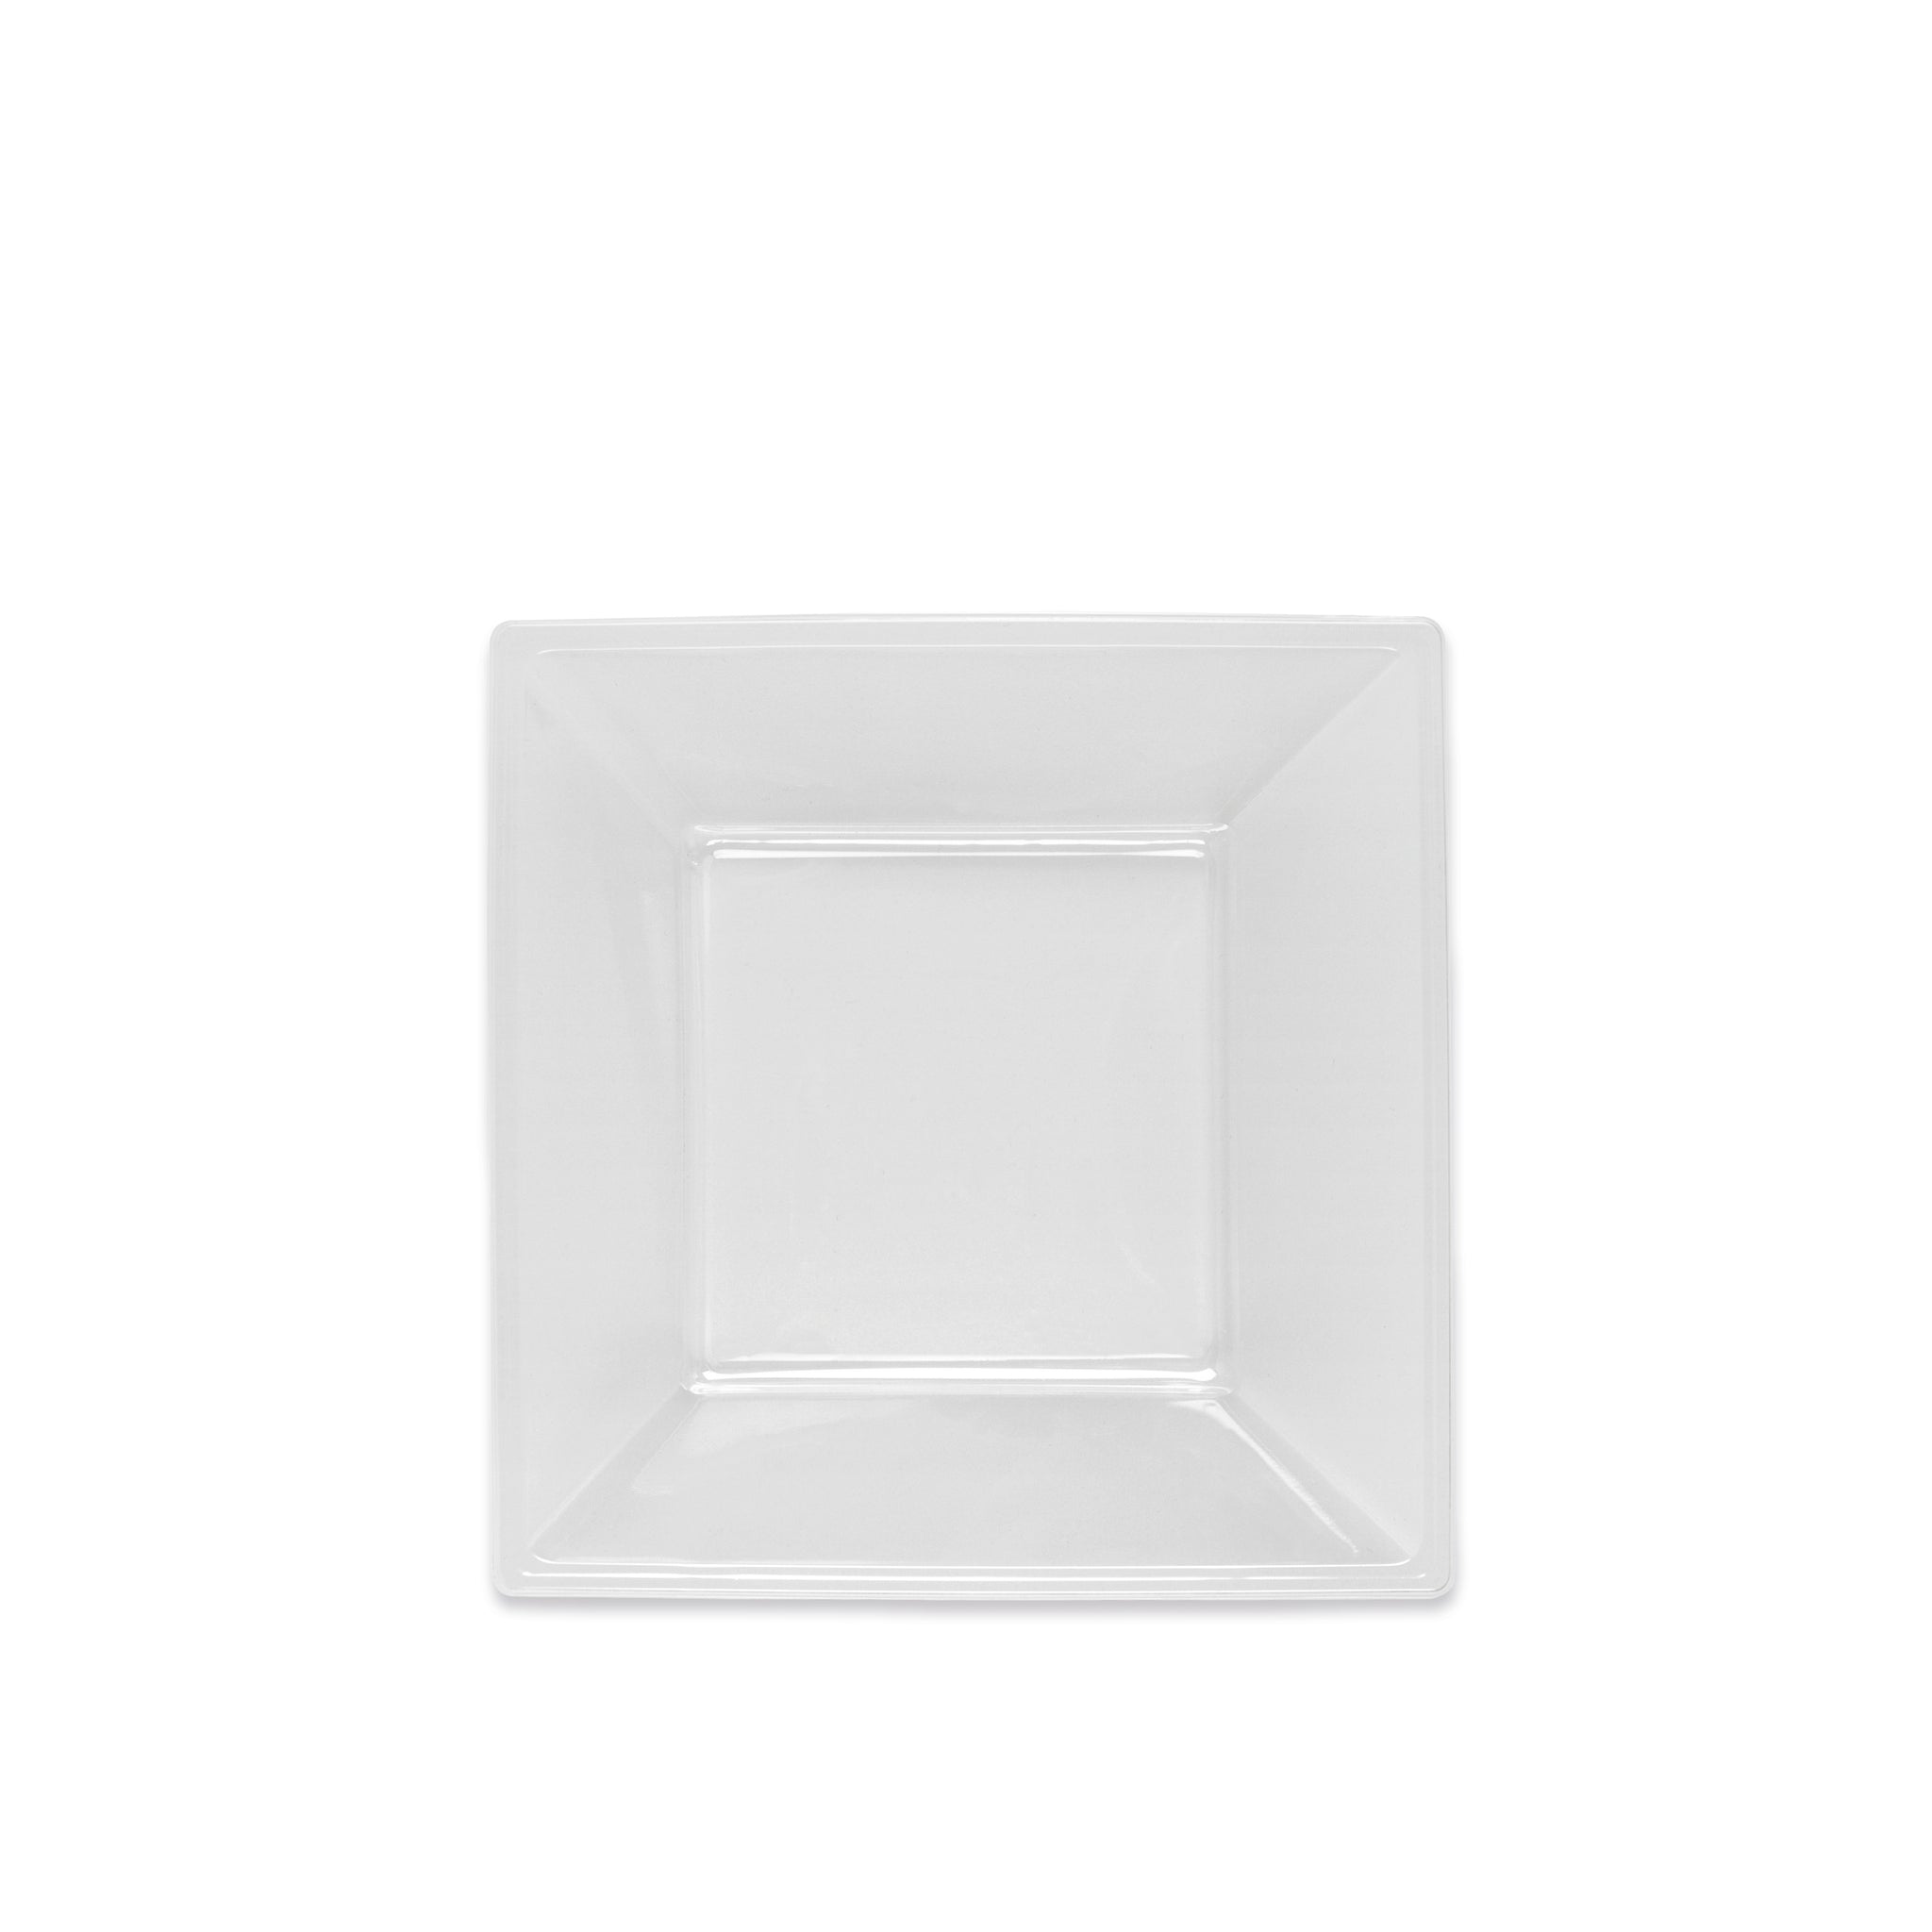 Square plastic dish 17 x 17 cm transparent